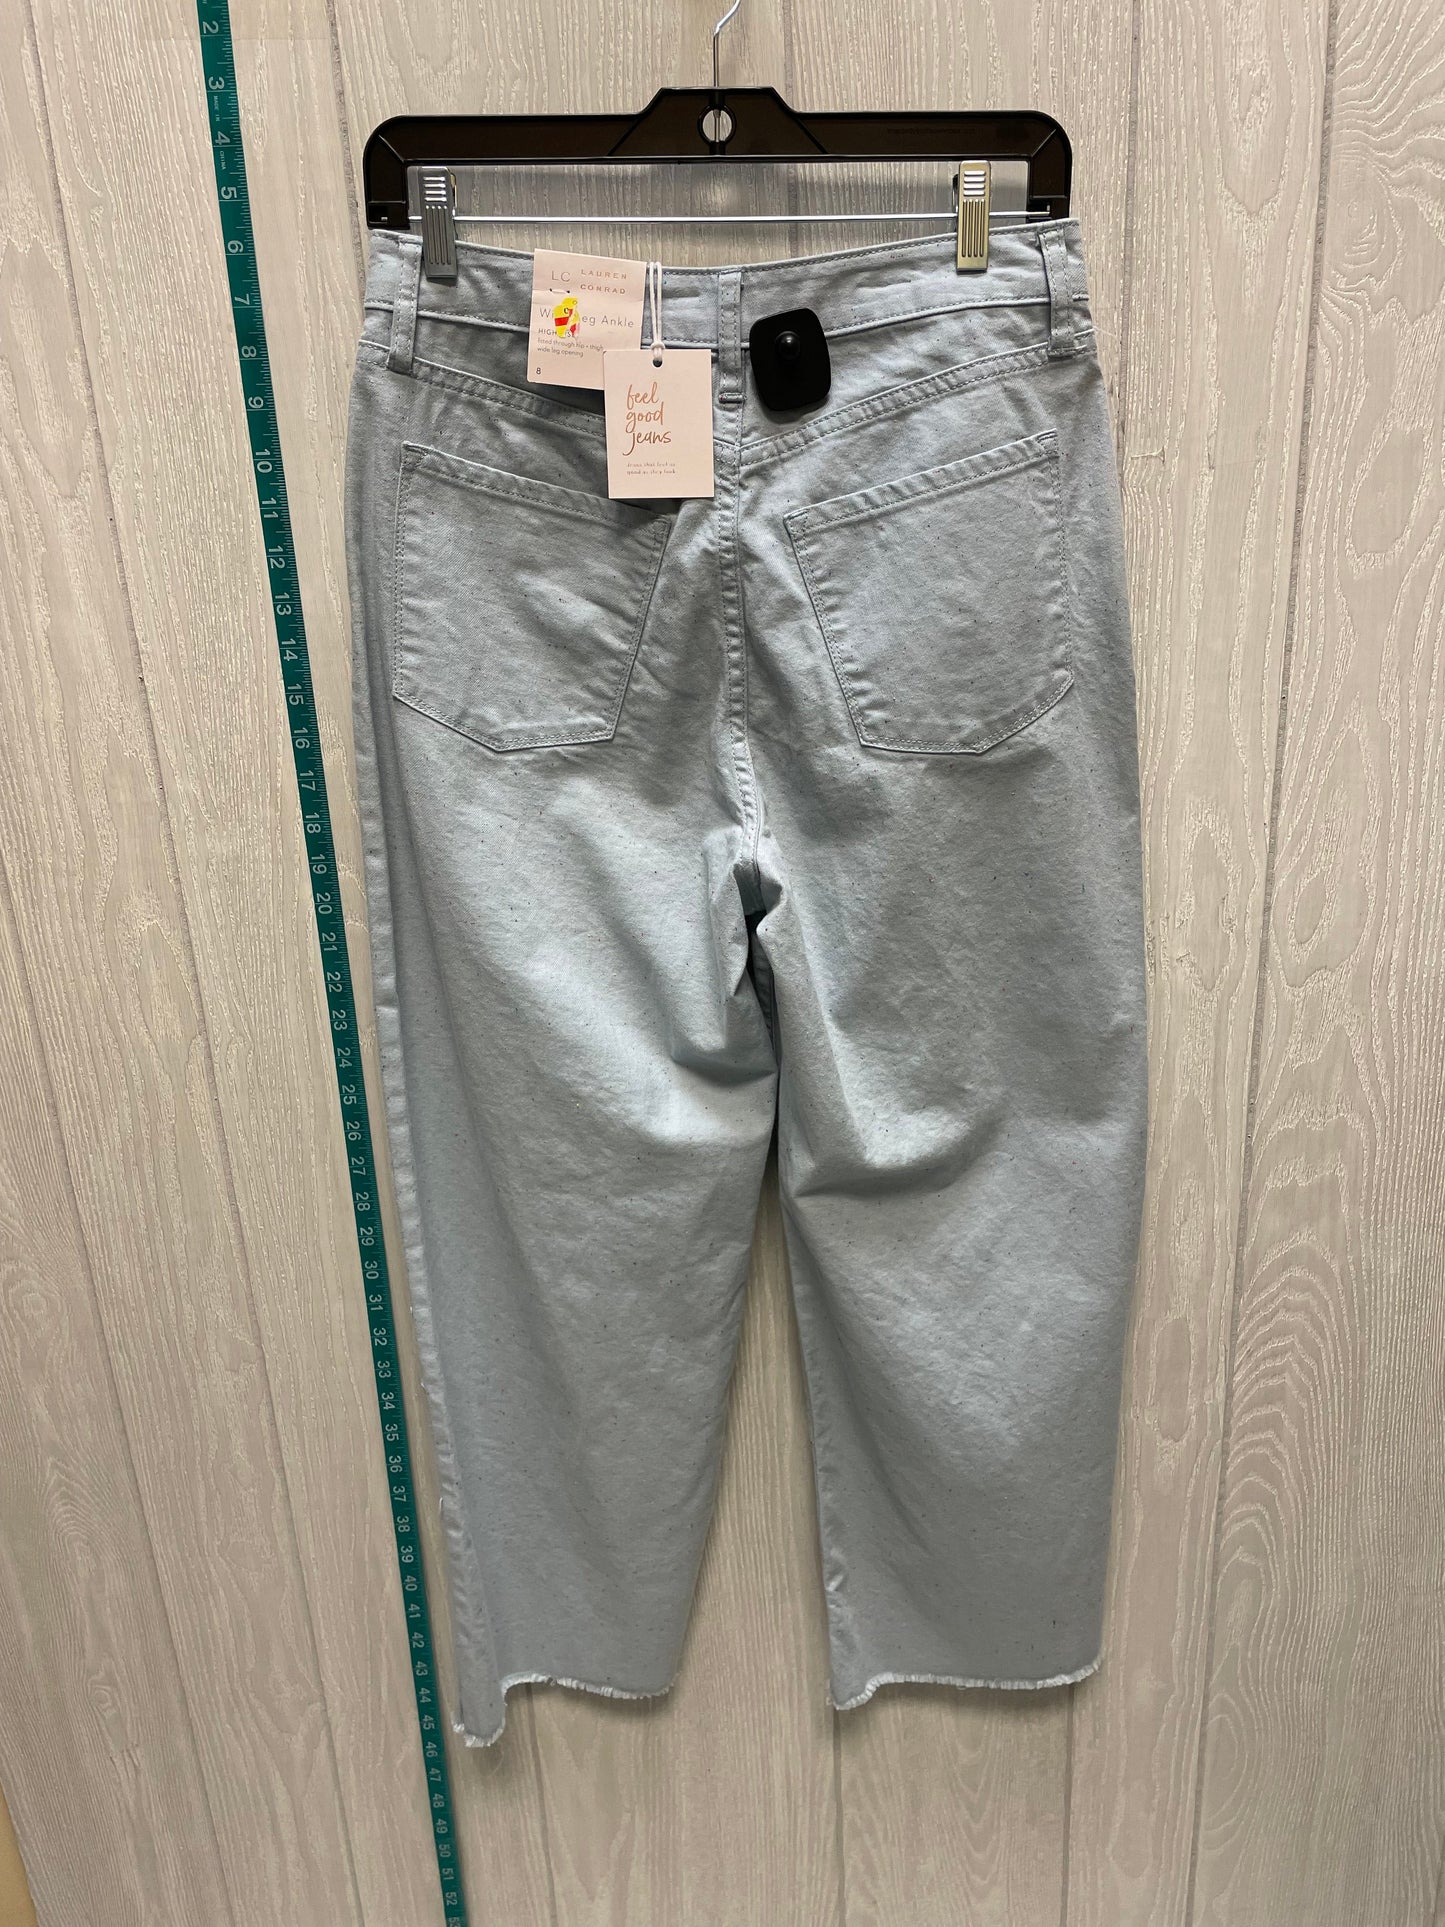 Blue Denim Jeans Cropped Lc Lauren Conrad, Size 8